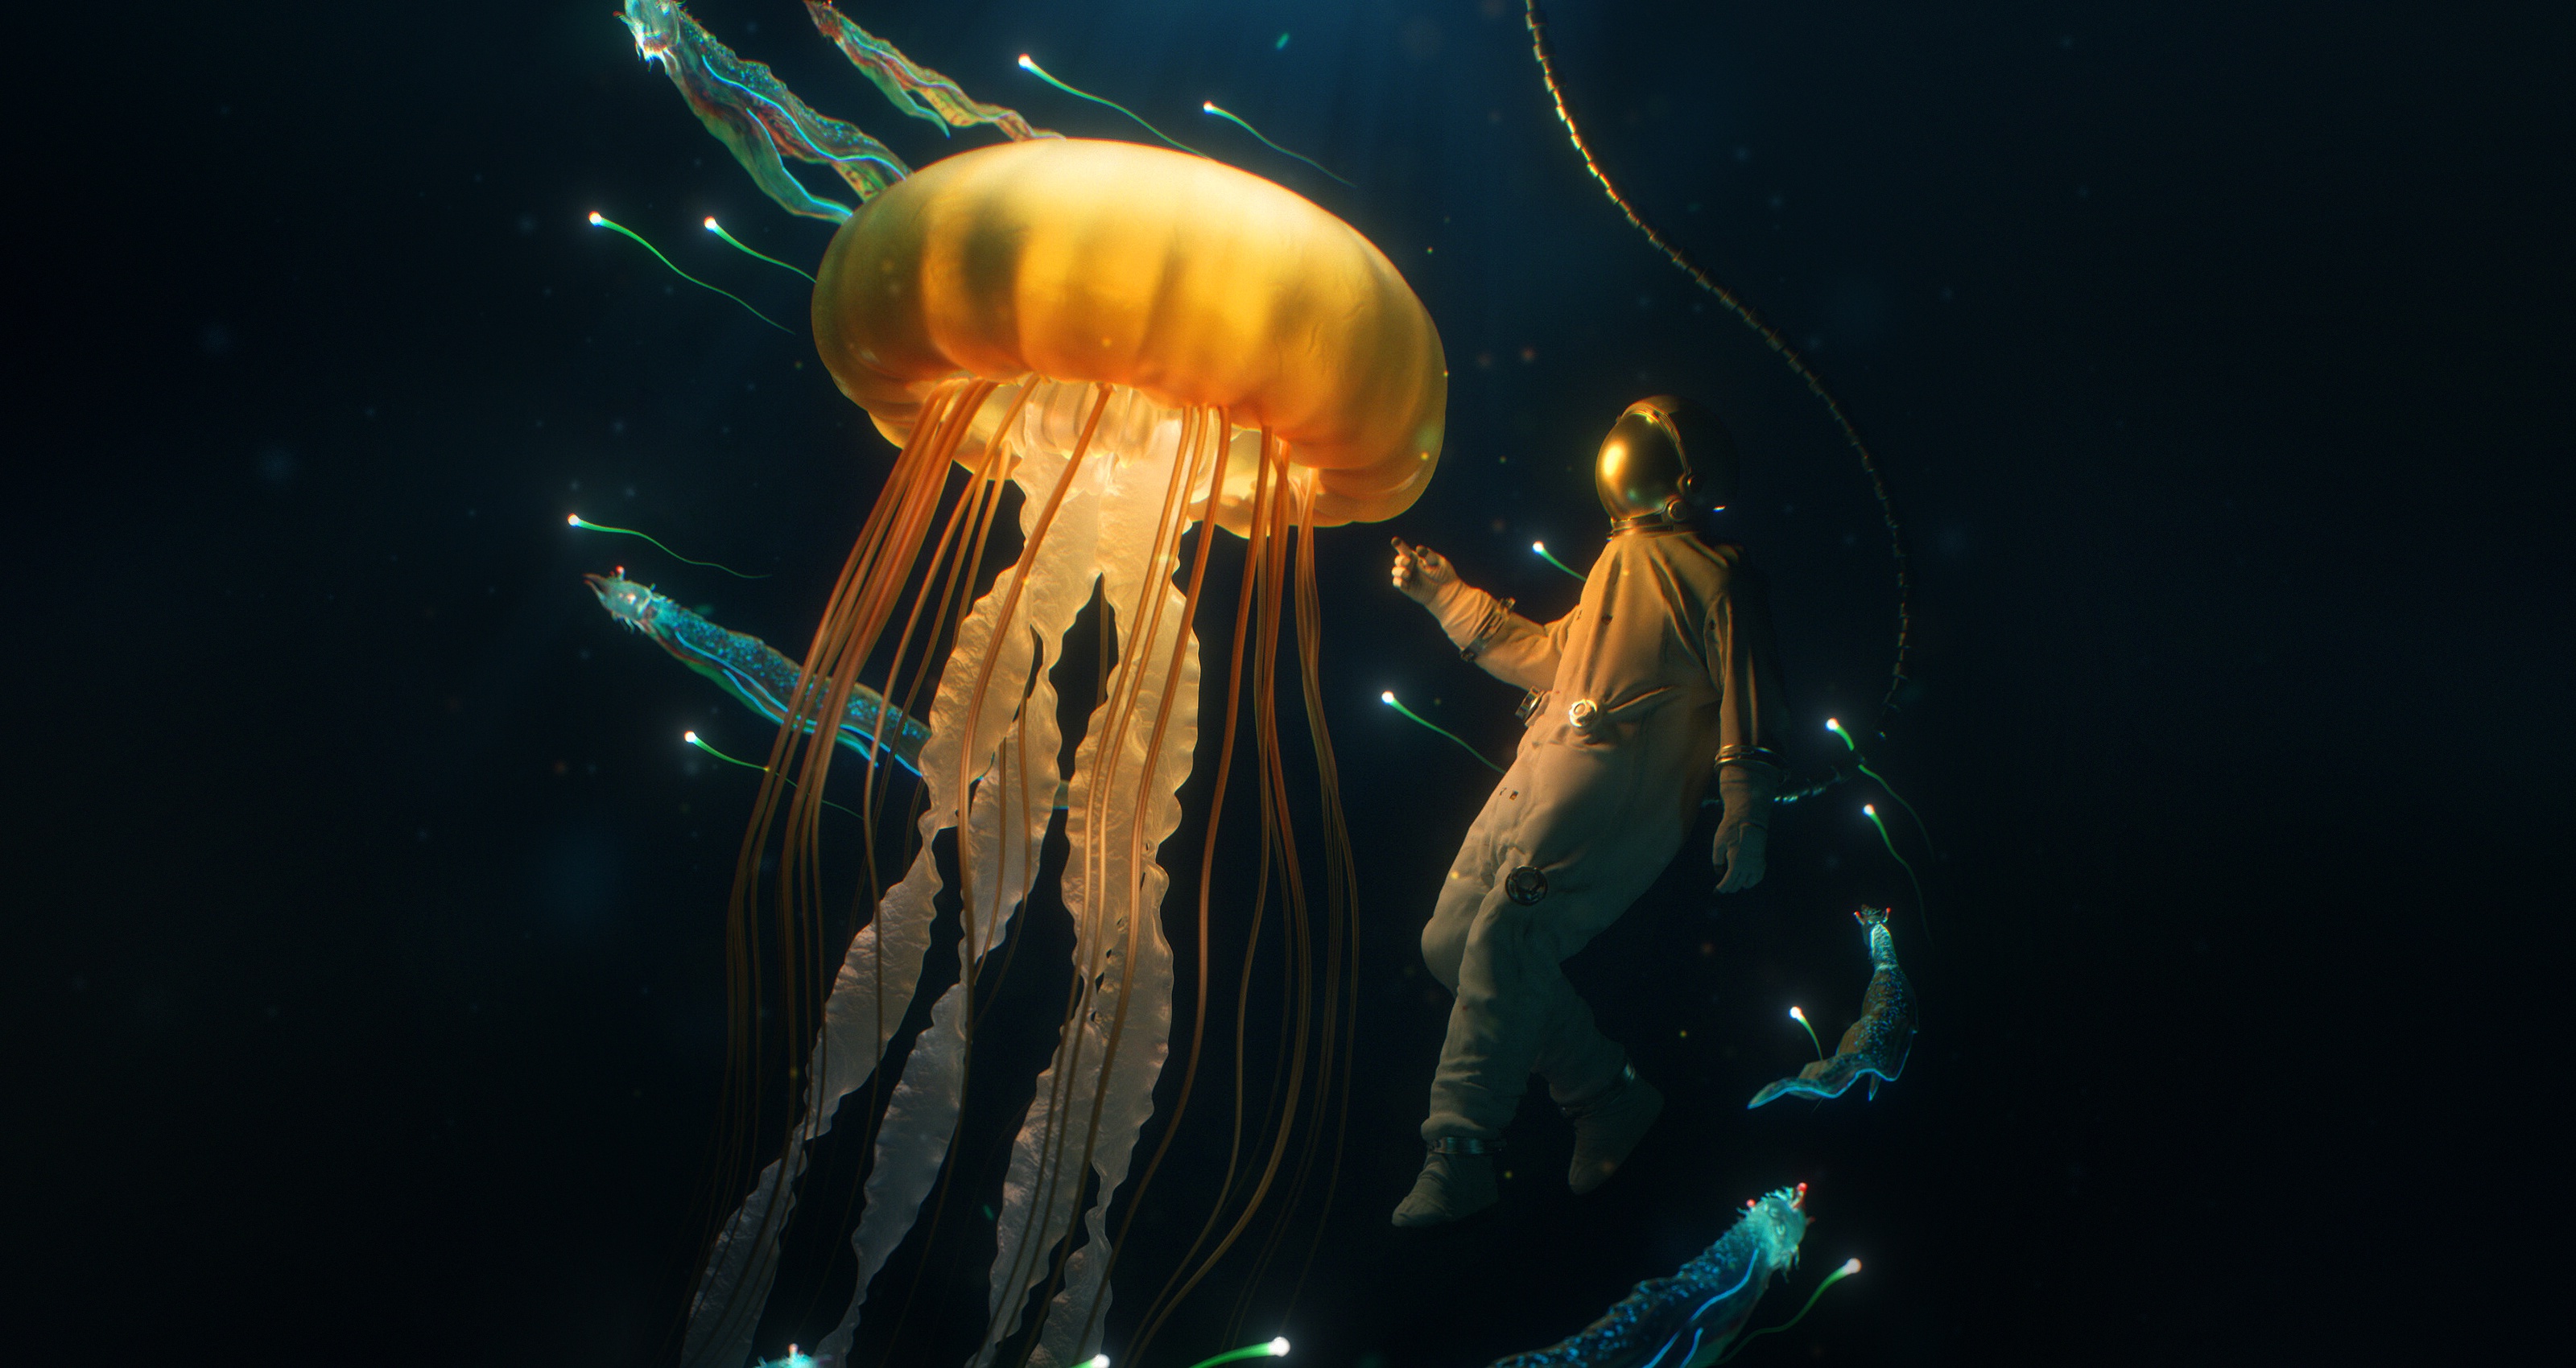 fantasy, underwater, diver, jellyfish 1080p